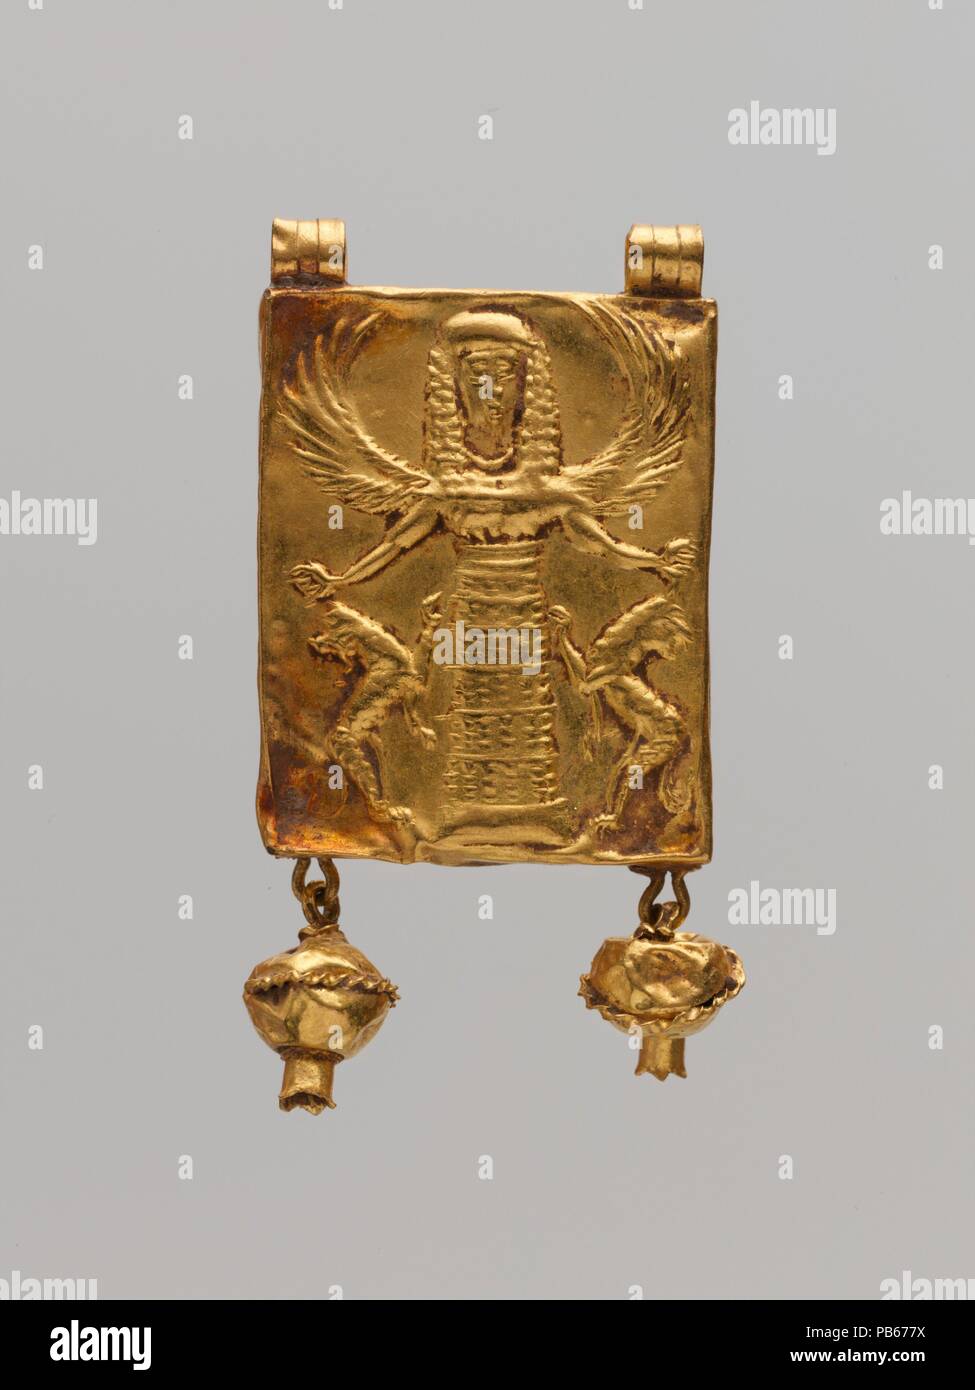 Merecer George Hanbury Calendario Colgante de oro con amante de los animales. Cultura: el griego.  Dimensiones: 1 1/2 x 5/8 x 1/8 in. (3,8 x 1,6 x 0,3 cm). Fecha: 7ª siglo  A.C.. Colgante de oro